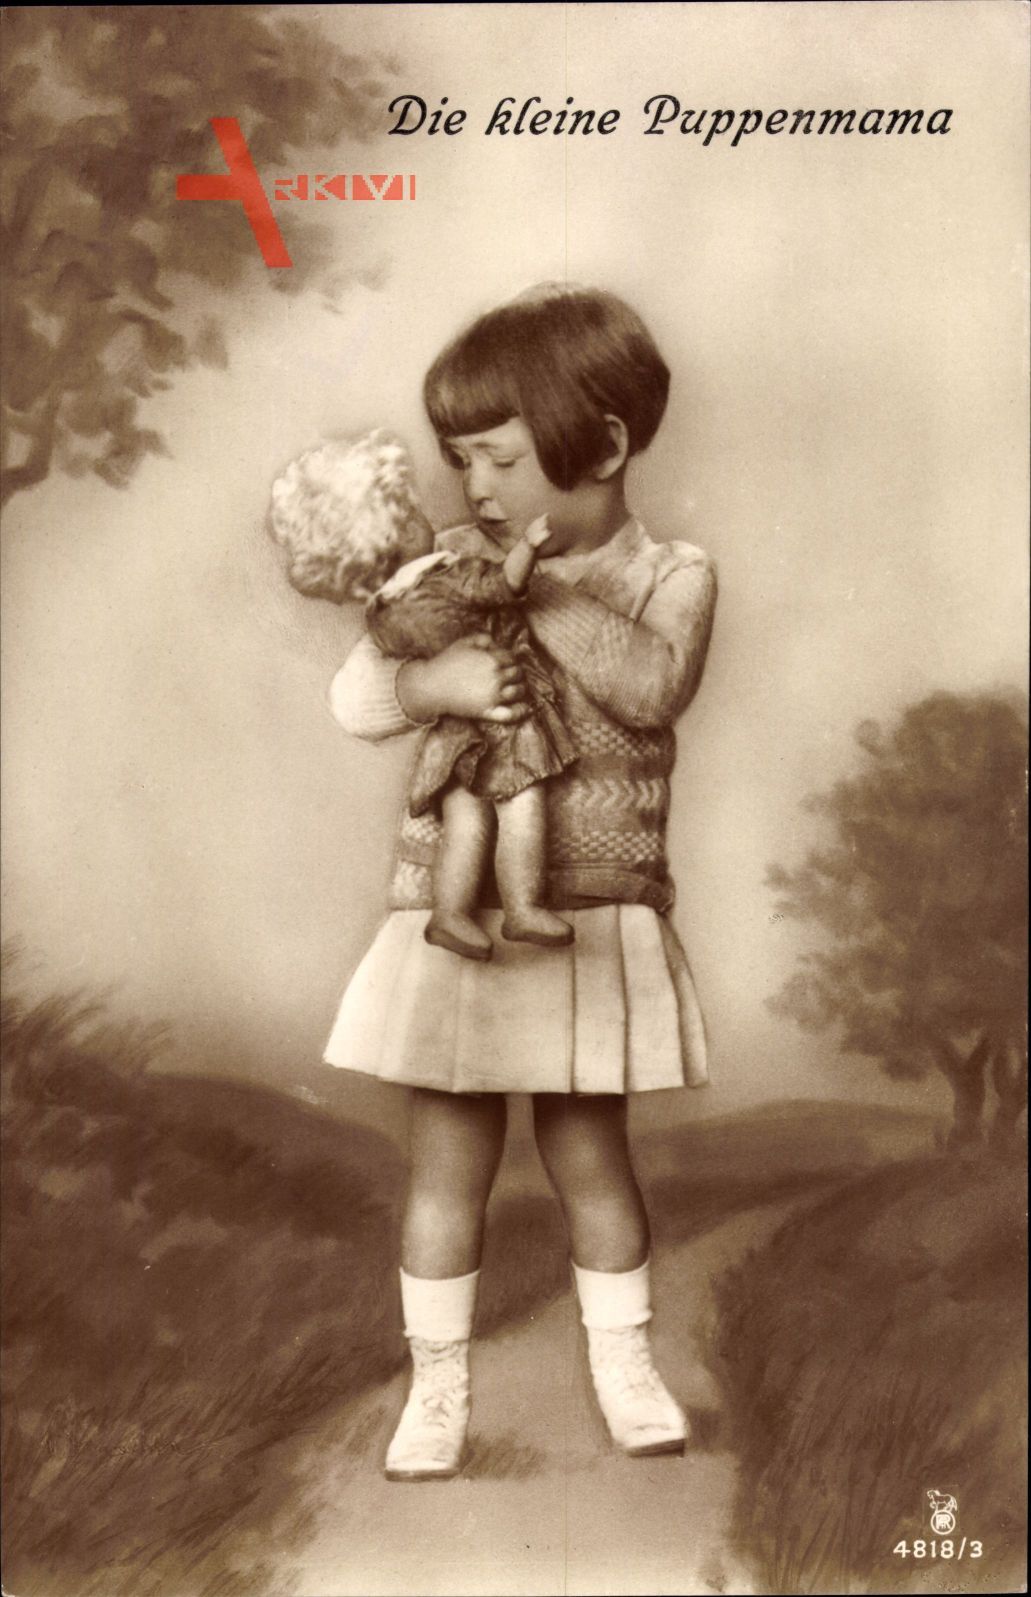 Die kleine Puppenmama, Kleines Mädchen mit Puppe, RPH 4818 3